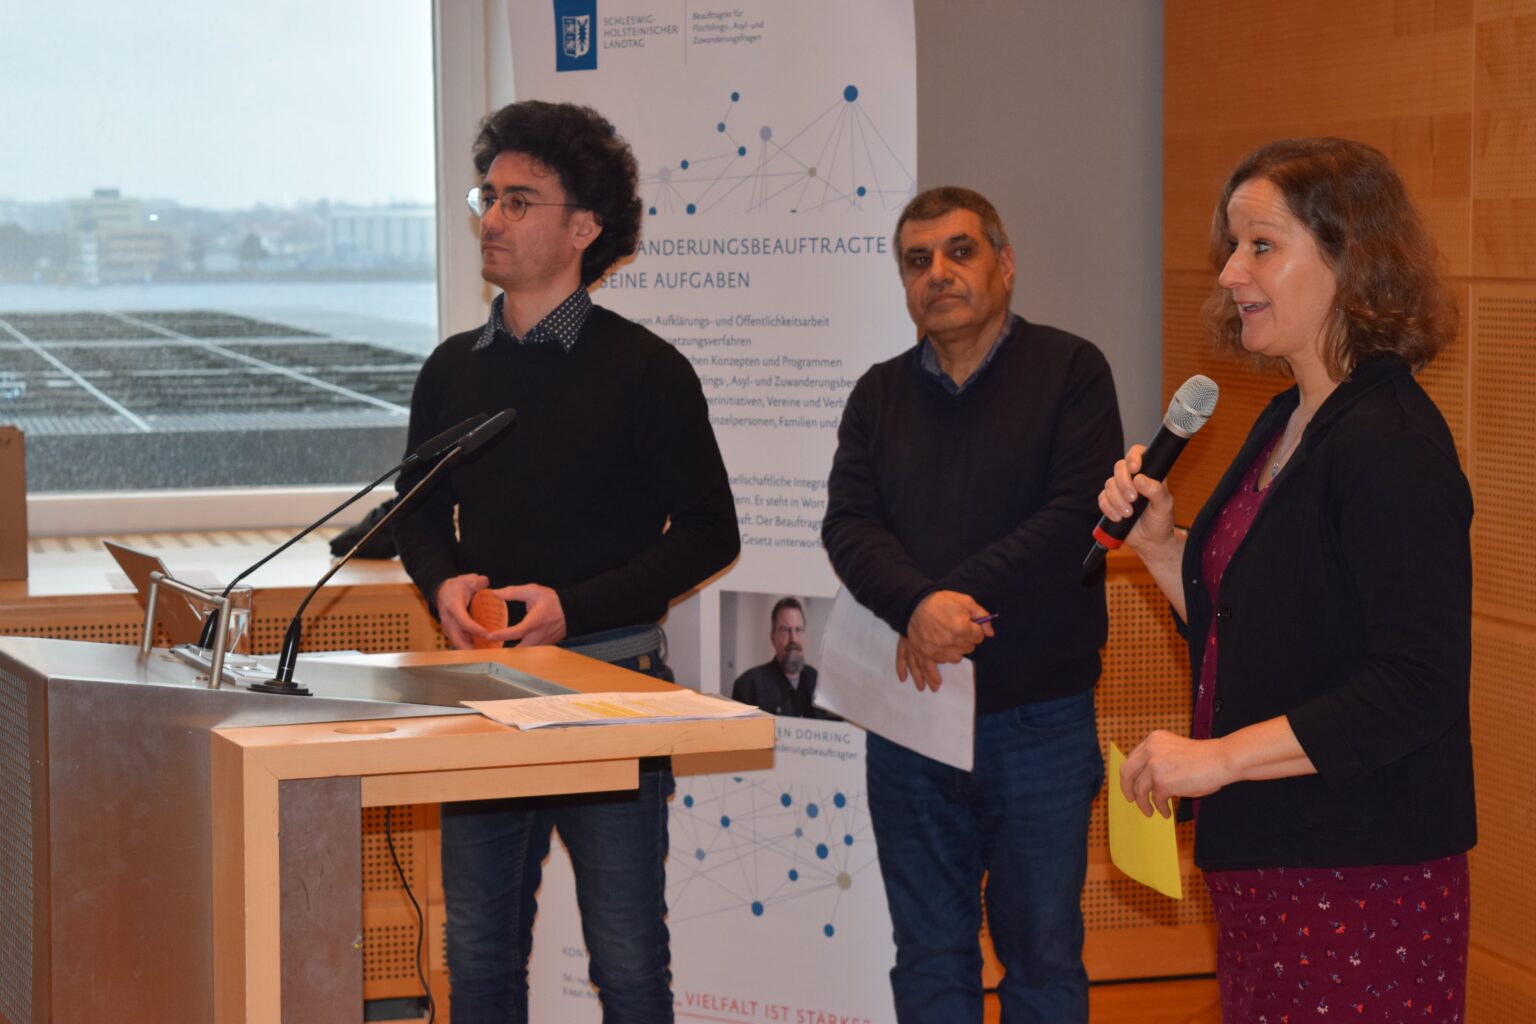 Abdulkader Hamoud und Ismail Abdi stellen gemeinsam mit Astrid Petermann ihre Arbeit im Projekt "Von Mann zu Mann 2.0" vor.